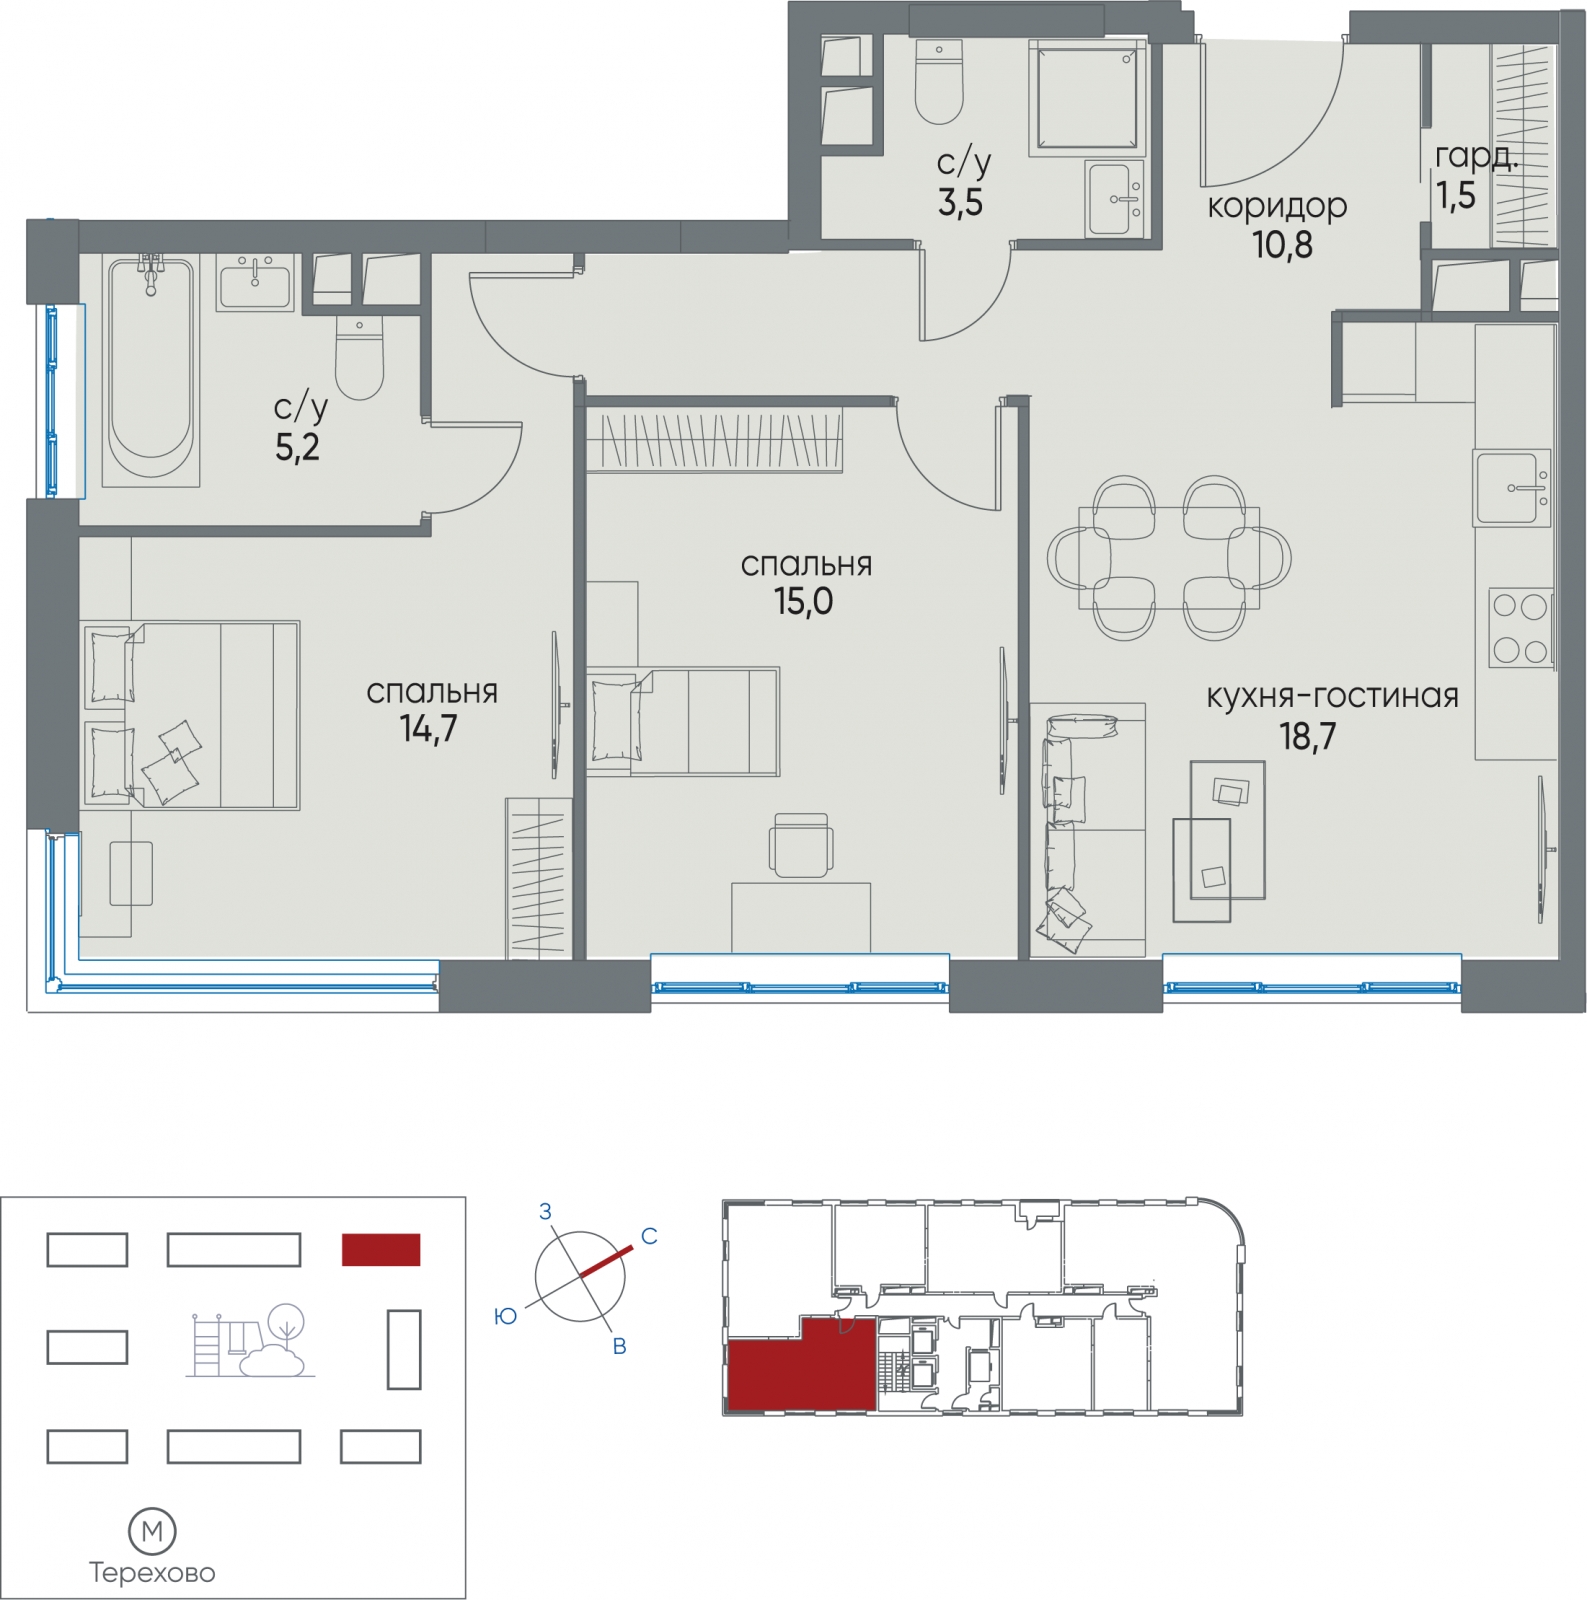 1-комнатная квартира с отделкой в ЖК WINGS апартаменты на Крыленко на 12 этаже в 1 секции. Дом сдан.